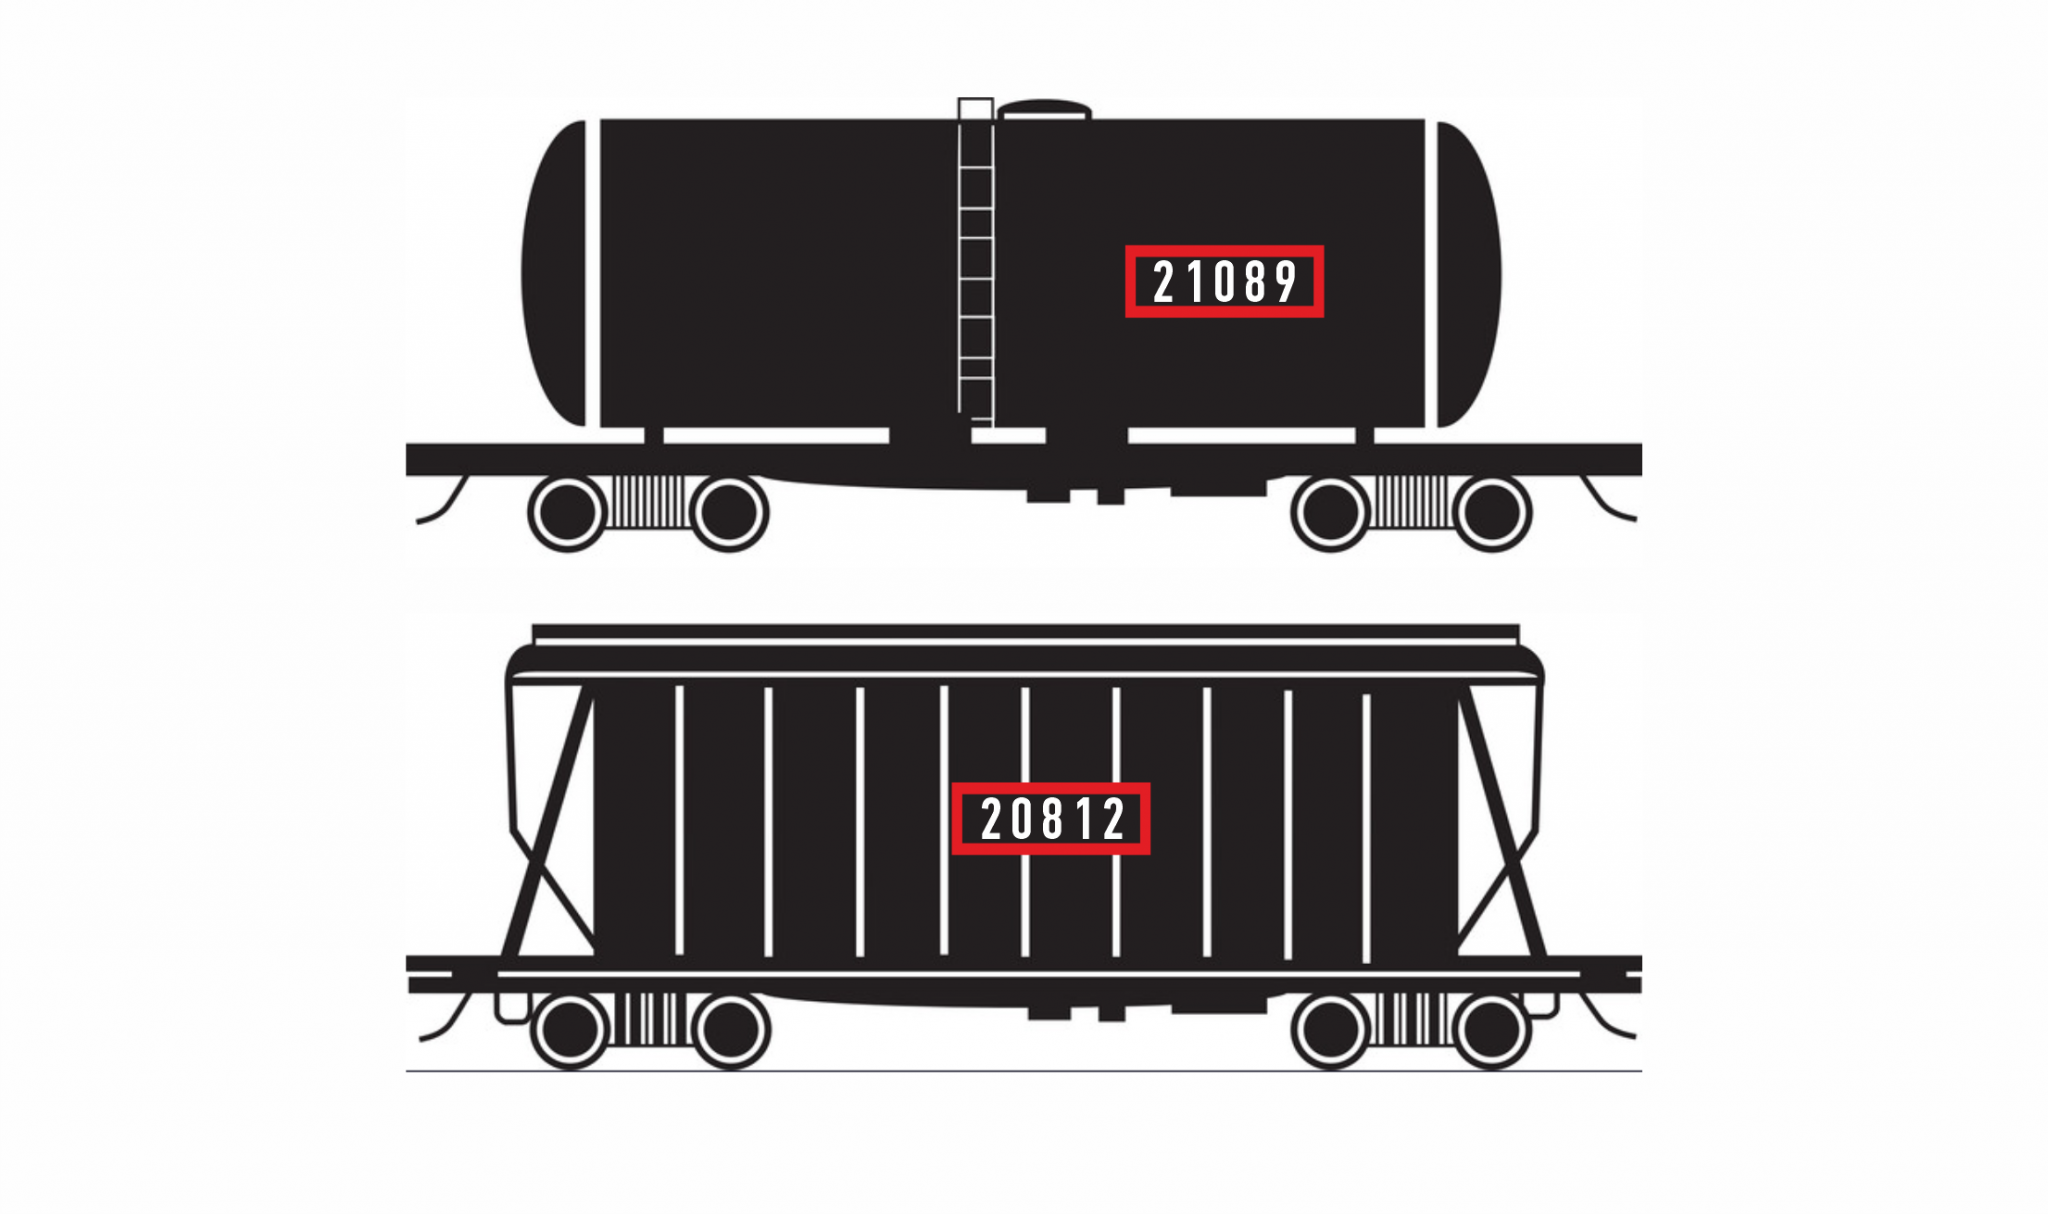 Автоматическая регистрация и распознавание номеров для всех типов локомотивов, грузовых вагонов, платформ, цистерн, формирование базы данных распознанных номеров вагонов.